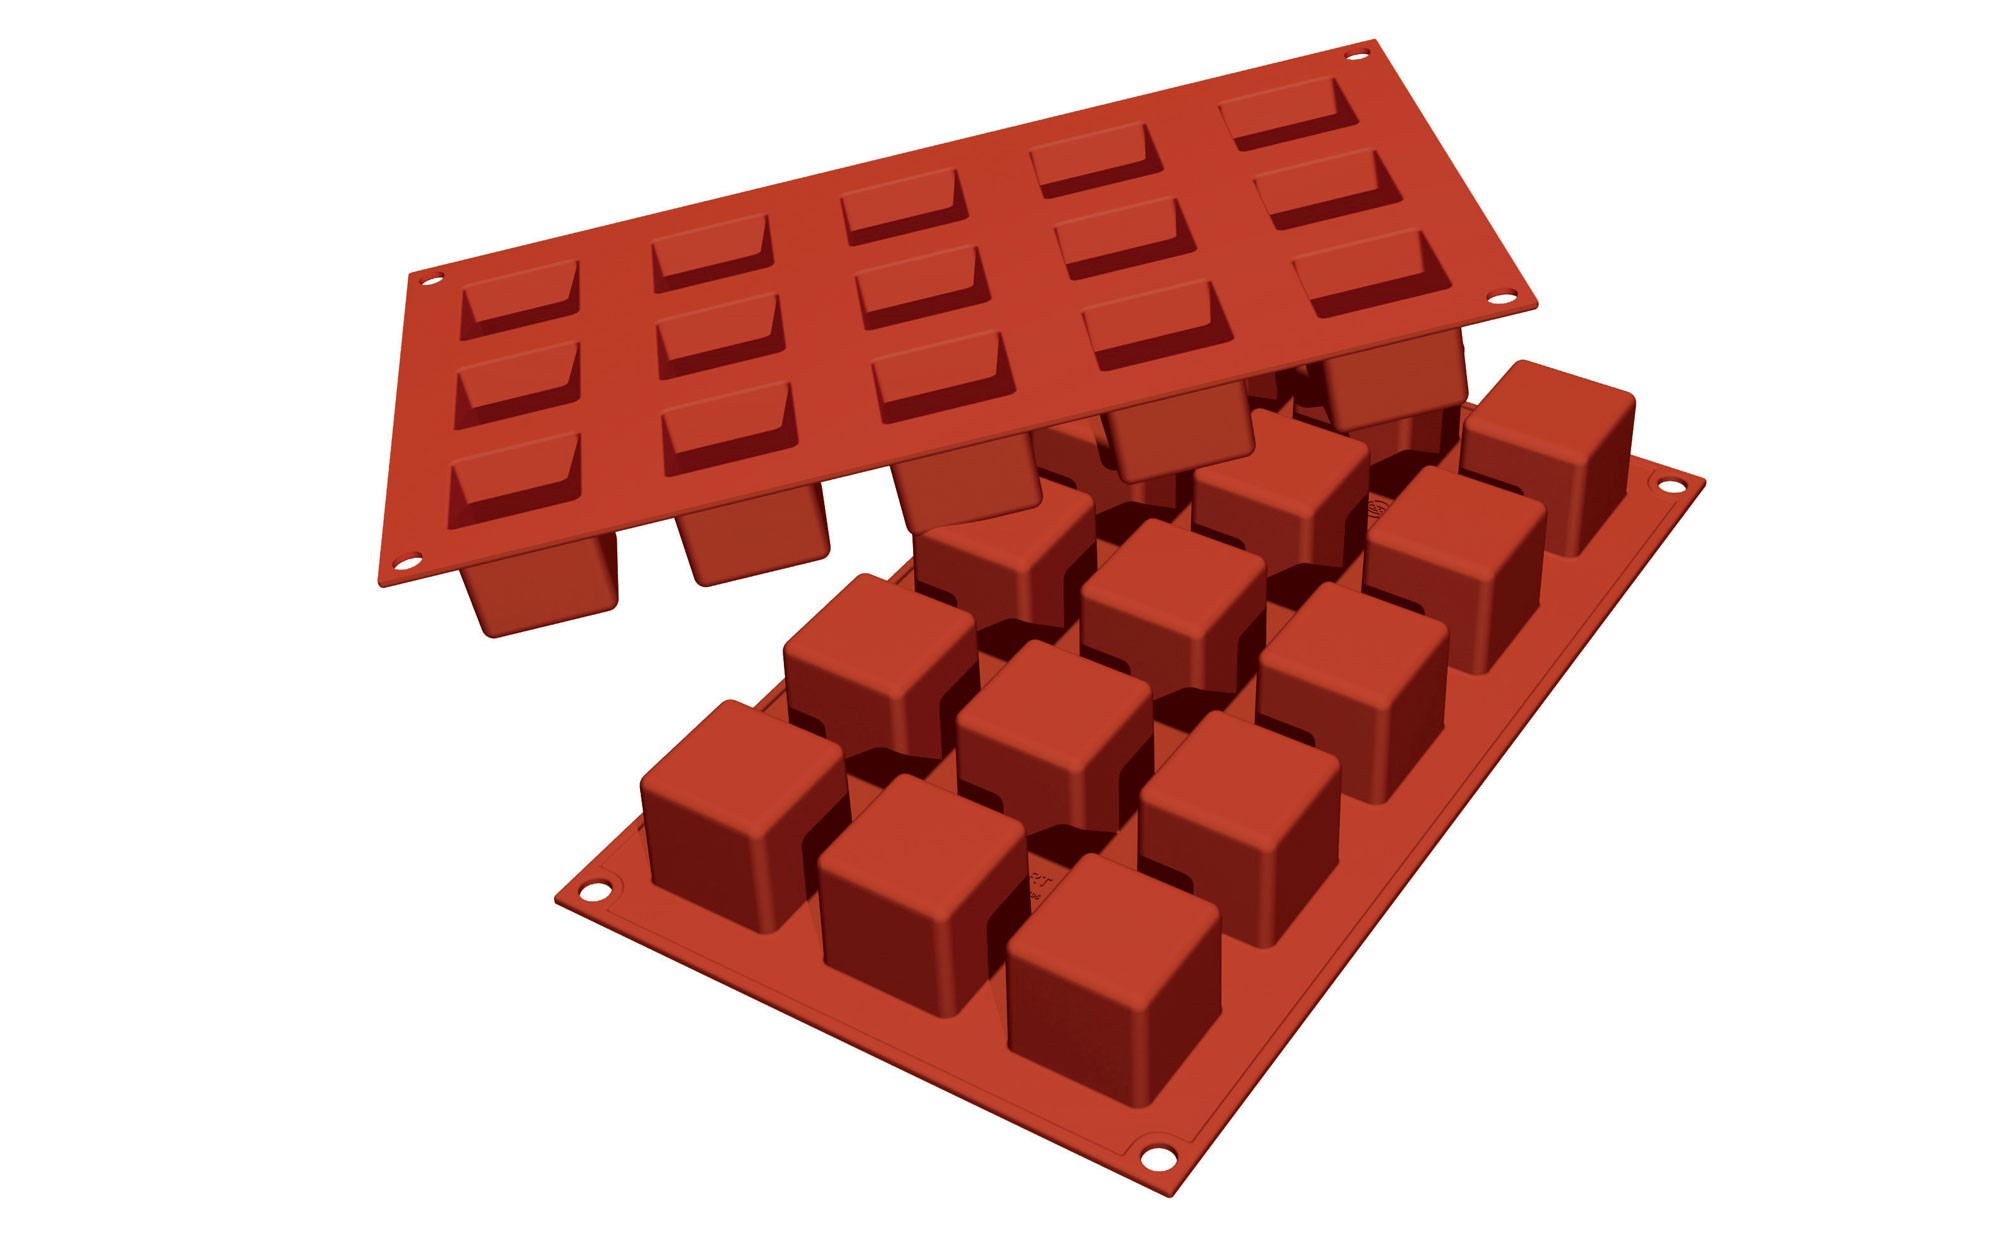 Moule à cubes de chocolat Silikomart